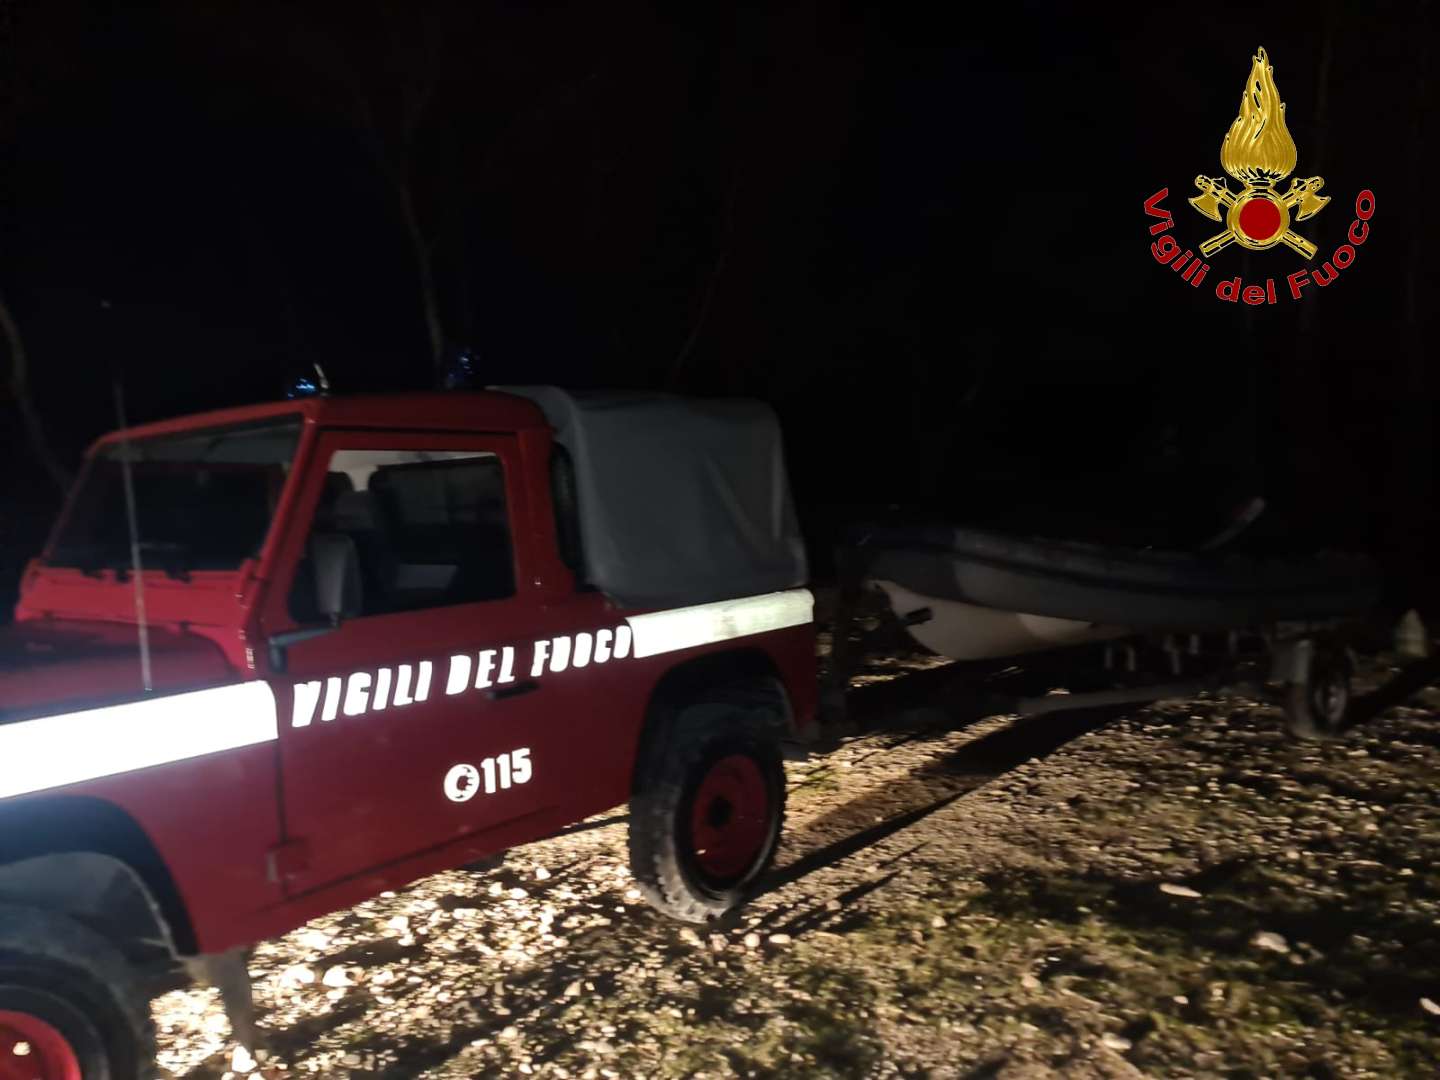 Vigili del Fuoco salvano un giovane escursionista di 13 anni caduto in un dirupo di 40 metri nel parco regionale del Taburno